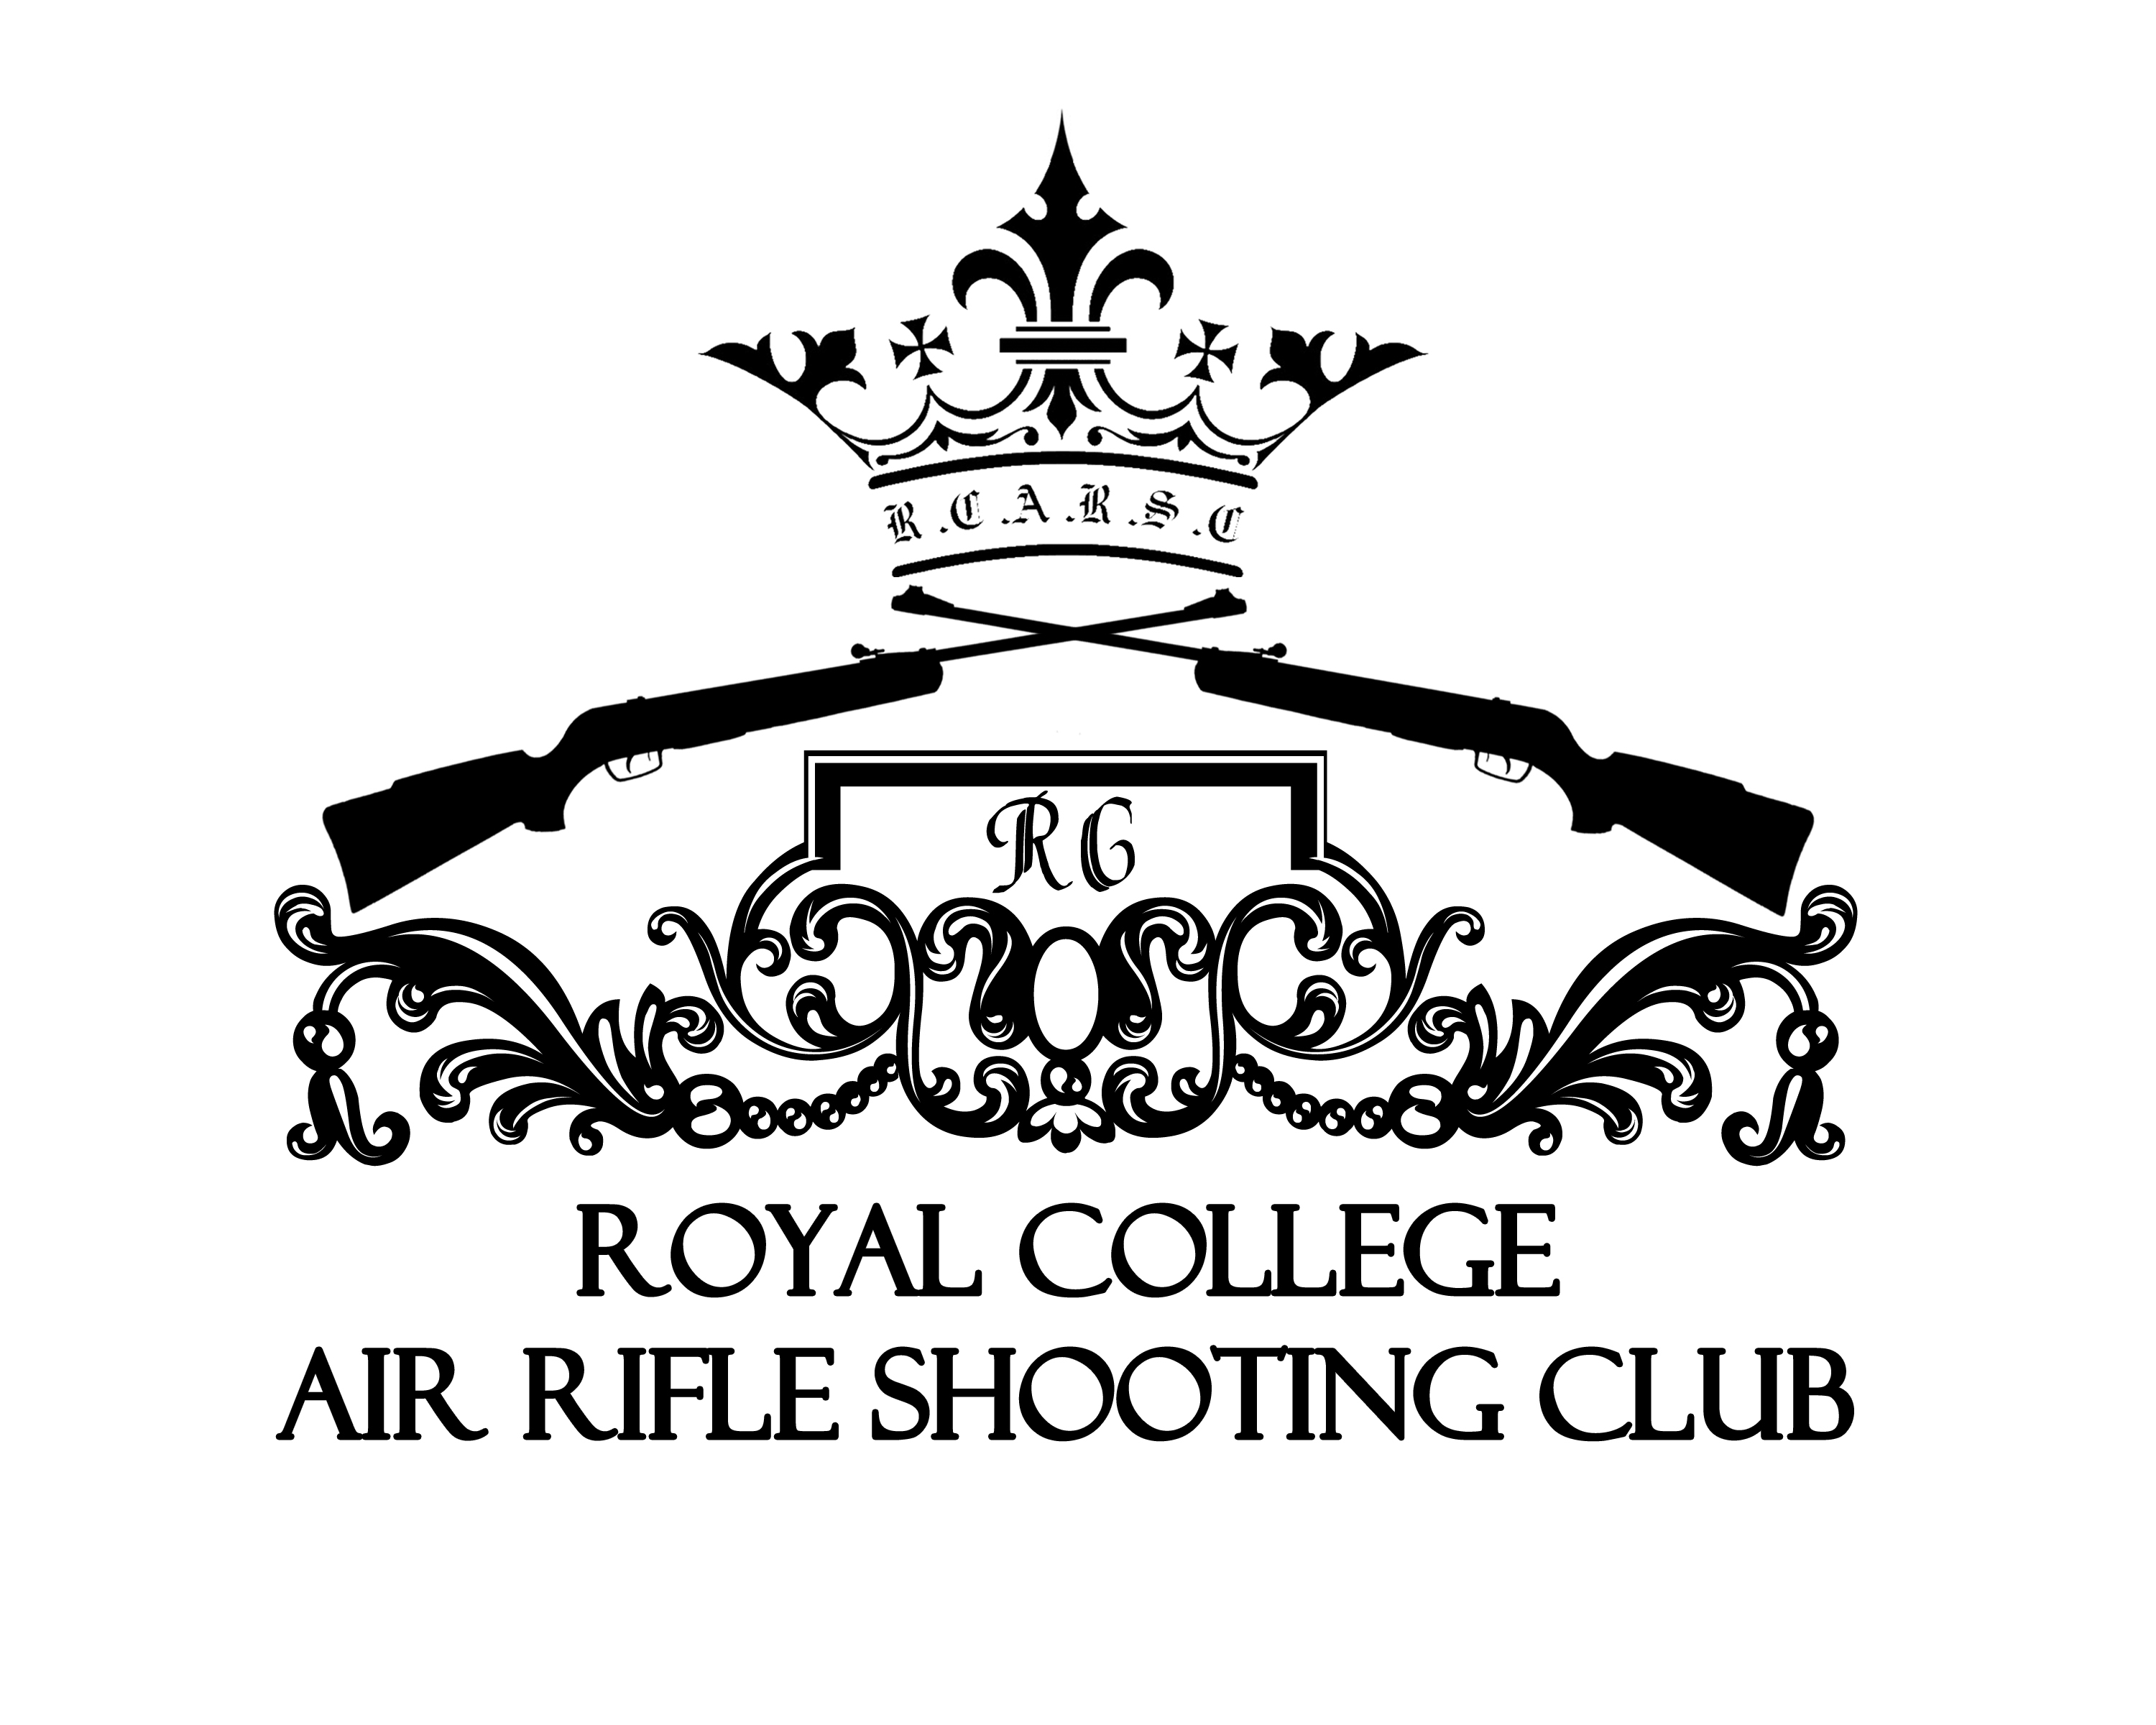 Rifle SHooting logo1 - The Royal College